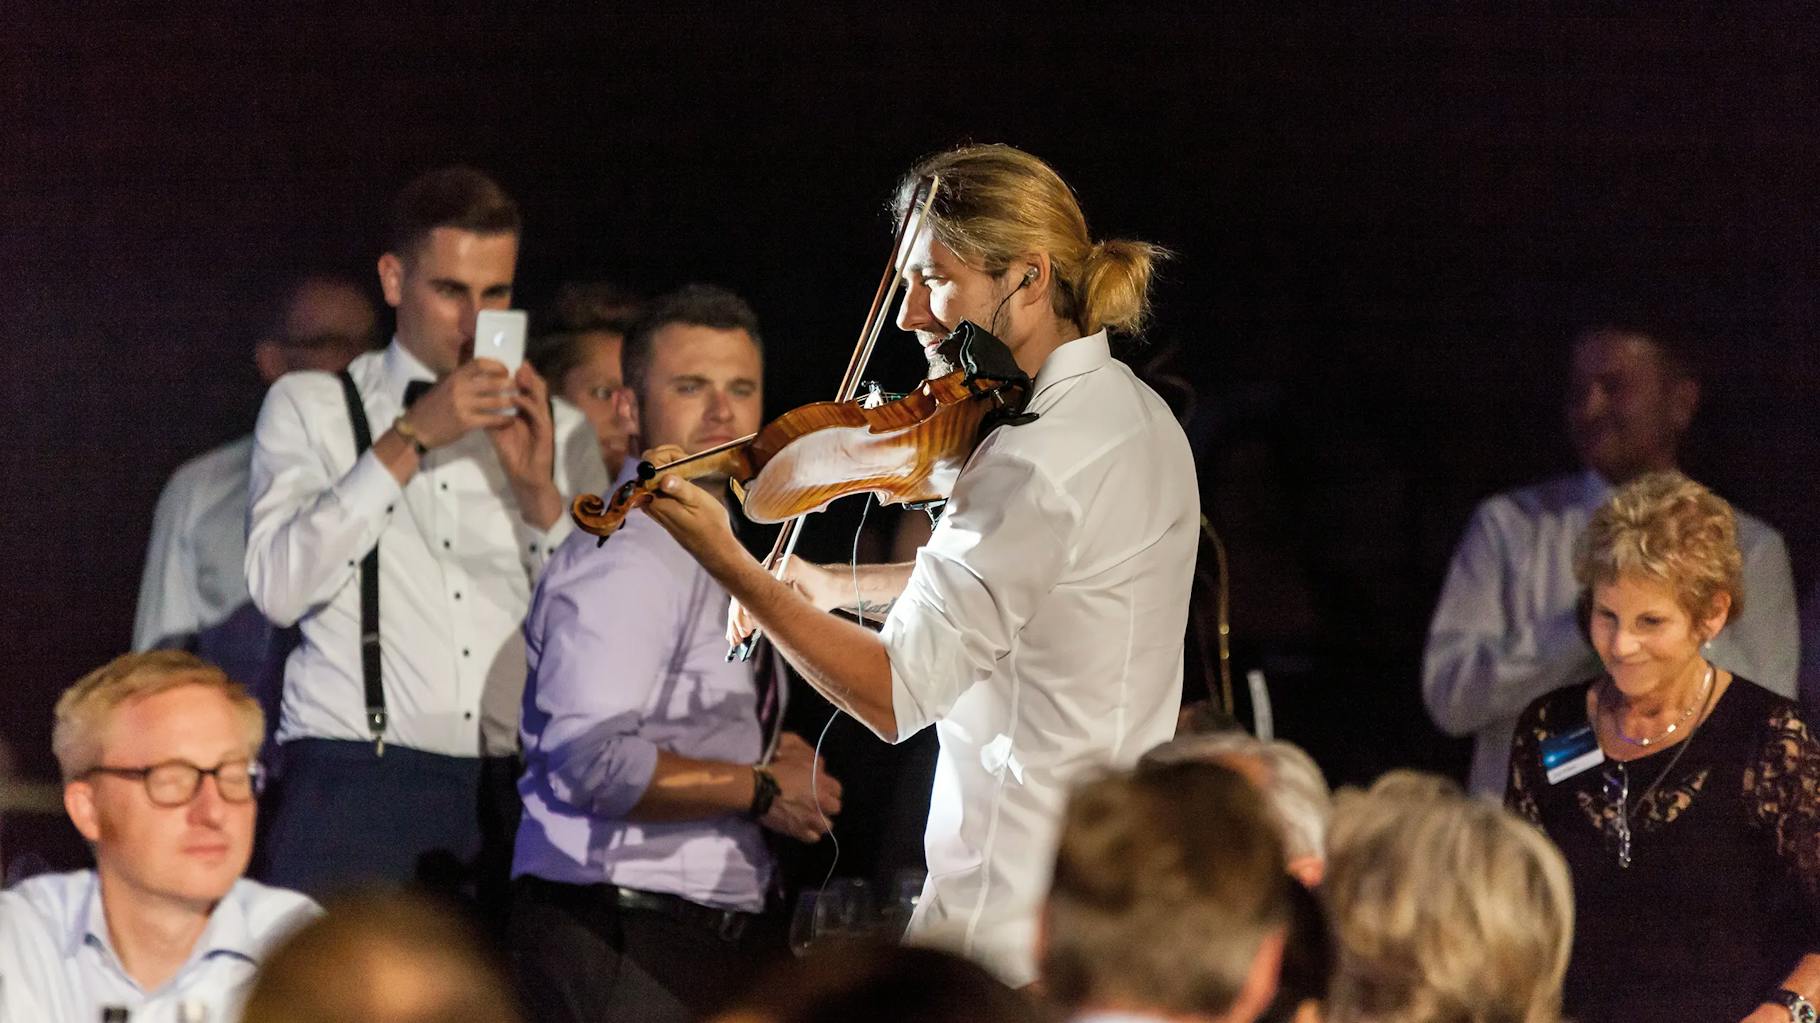 David Garret spielt, umkreist von Menschen, auf einem corporate event, Geige.